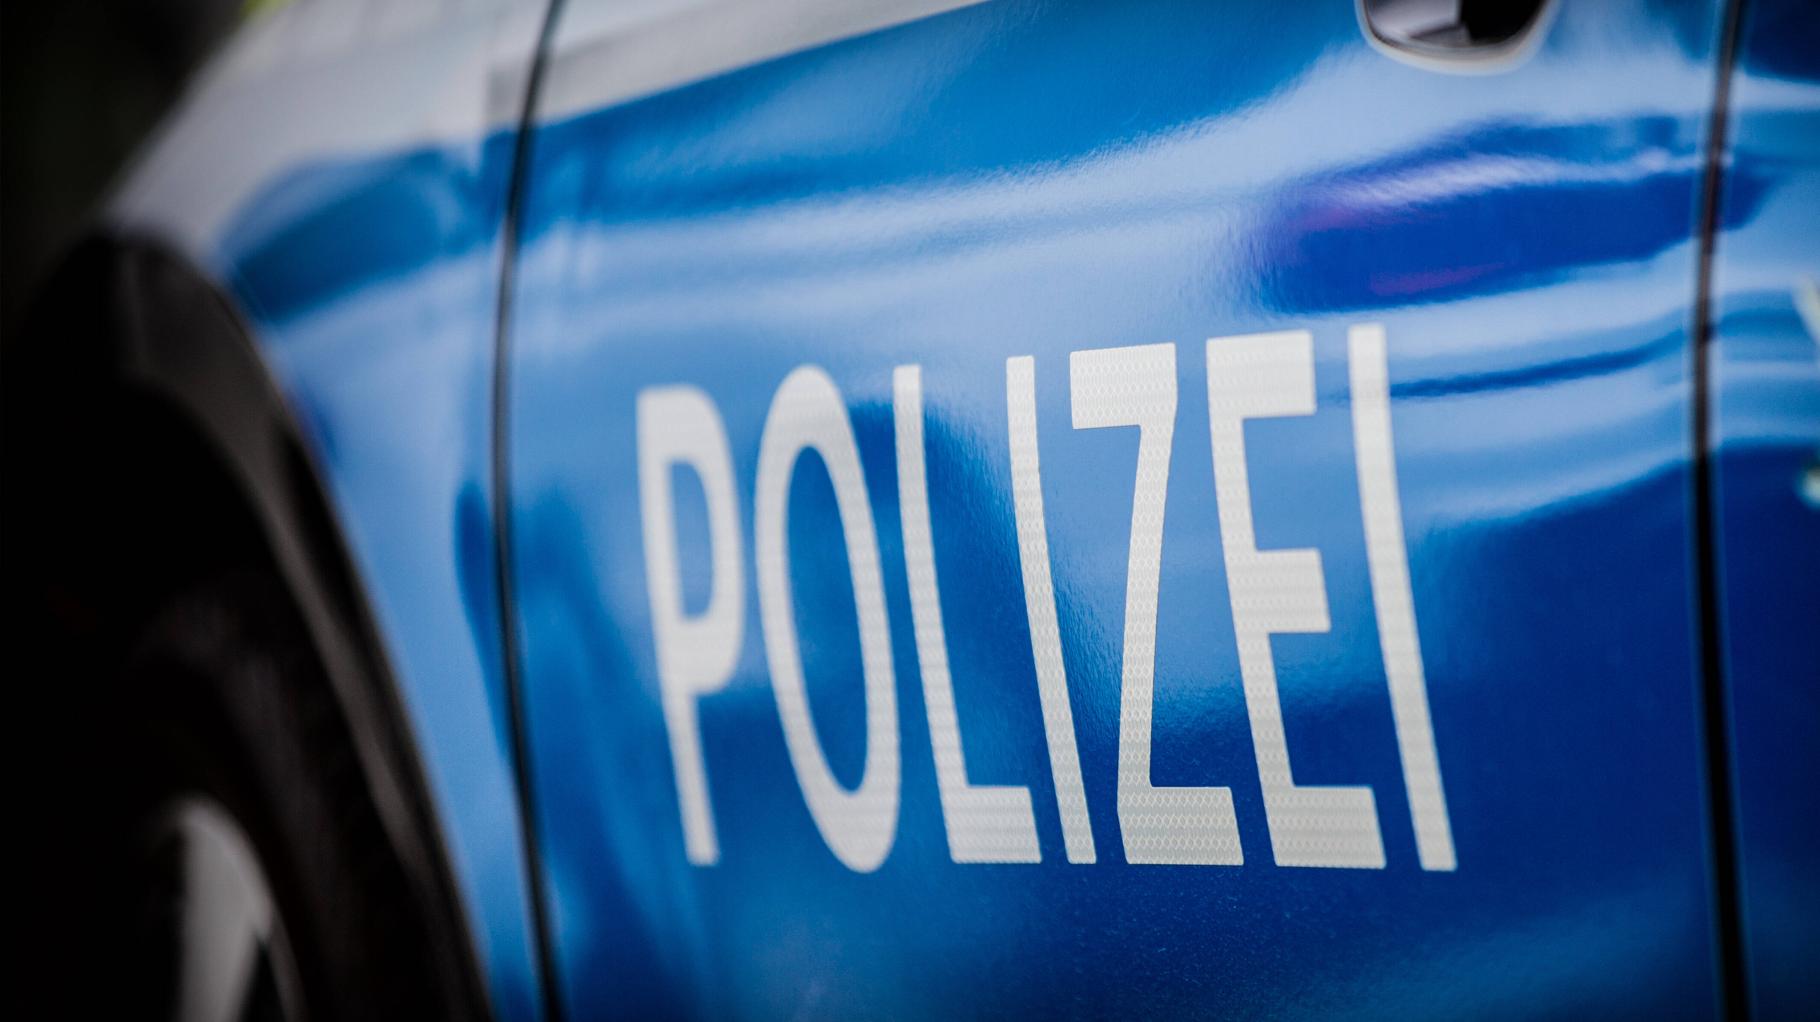 Neubrandenburg: Vier Kinder quälen 13-Jährige und filmen sich dabei